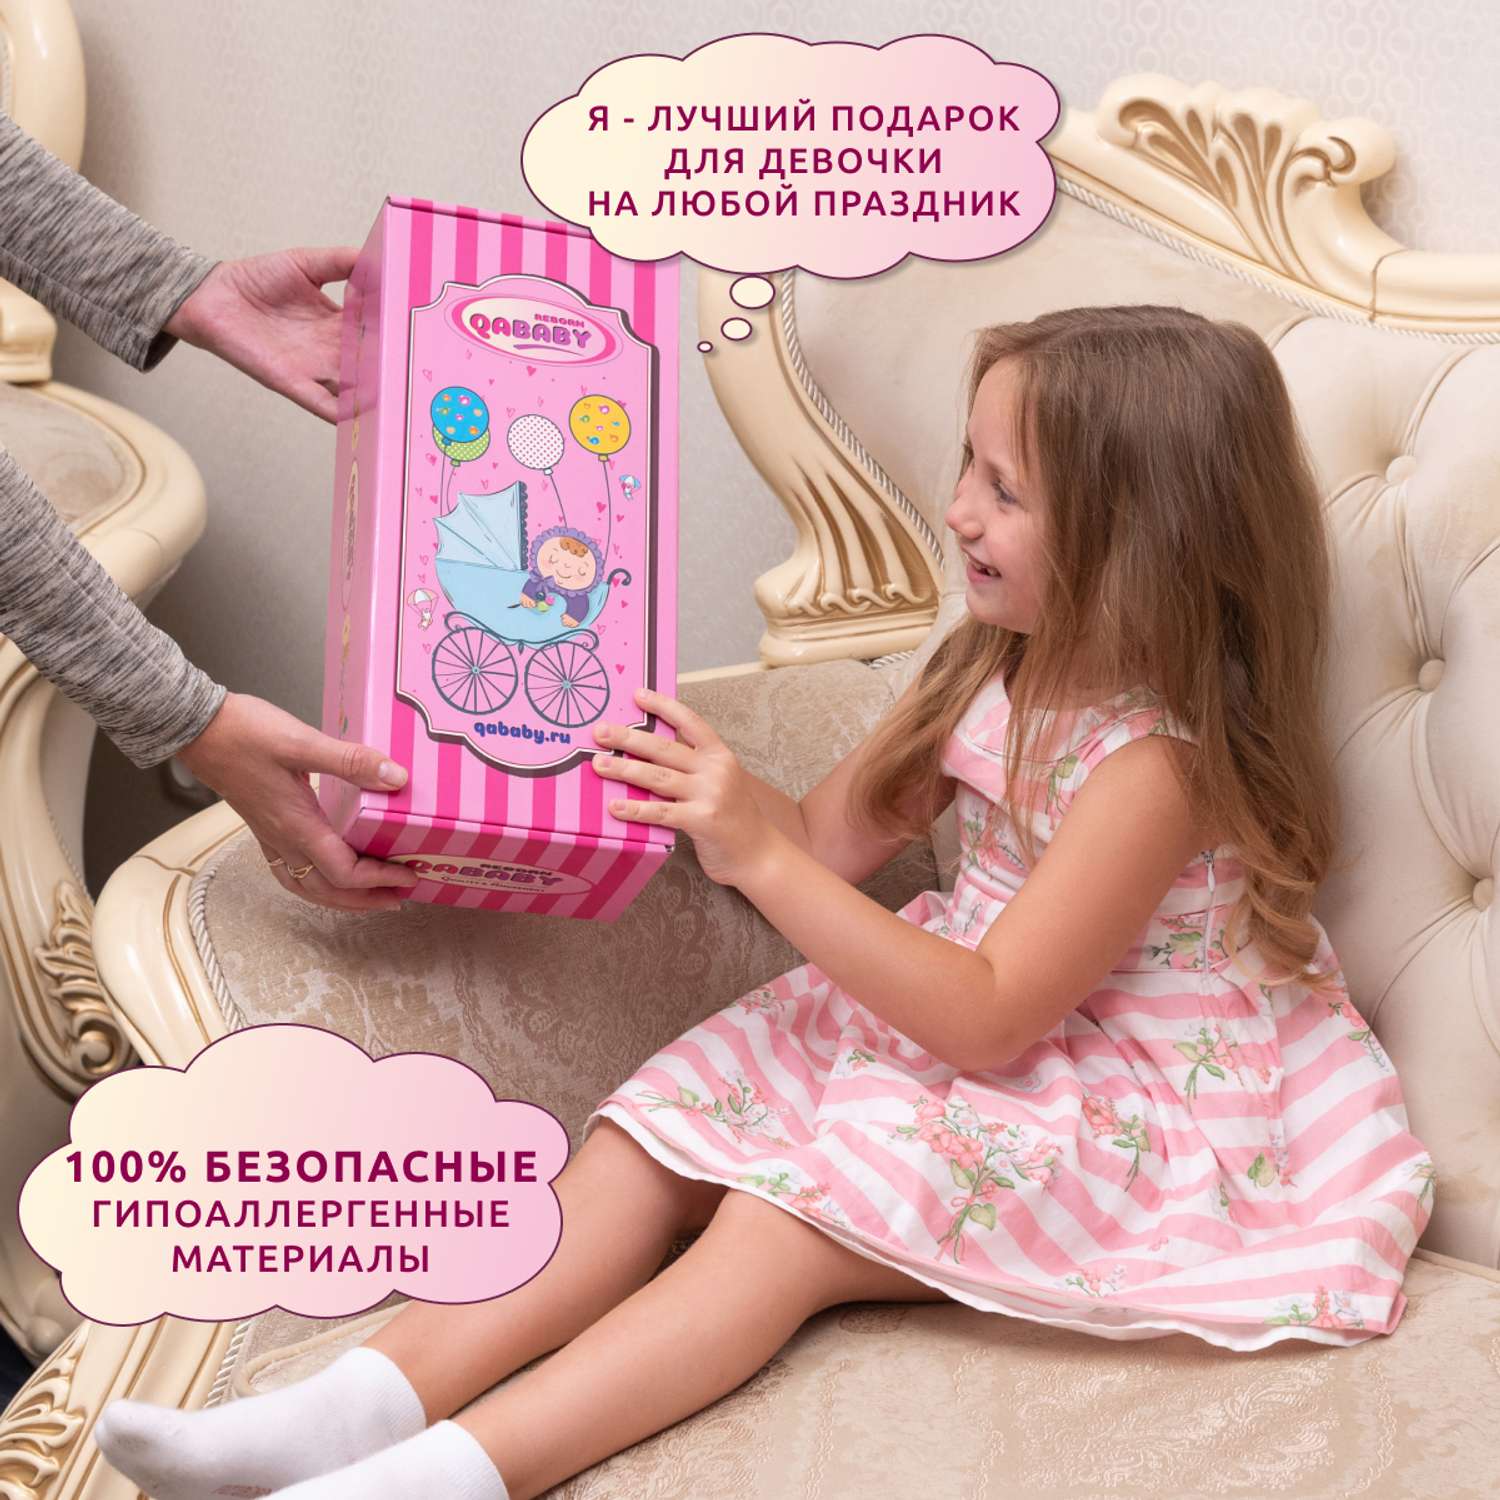 Кукла Реборн QA BABY Элен девочка интерактивная Пупс набор игрушки для ванной для девочки 38 см 3810 - фото 11